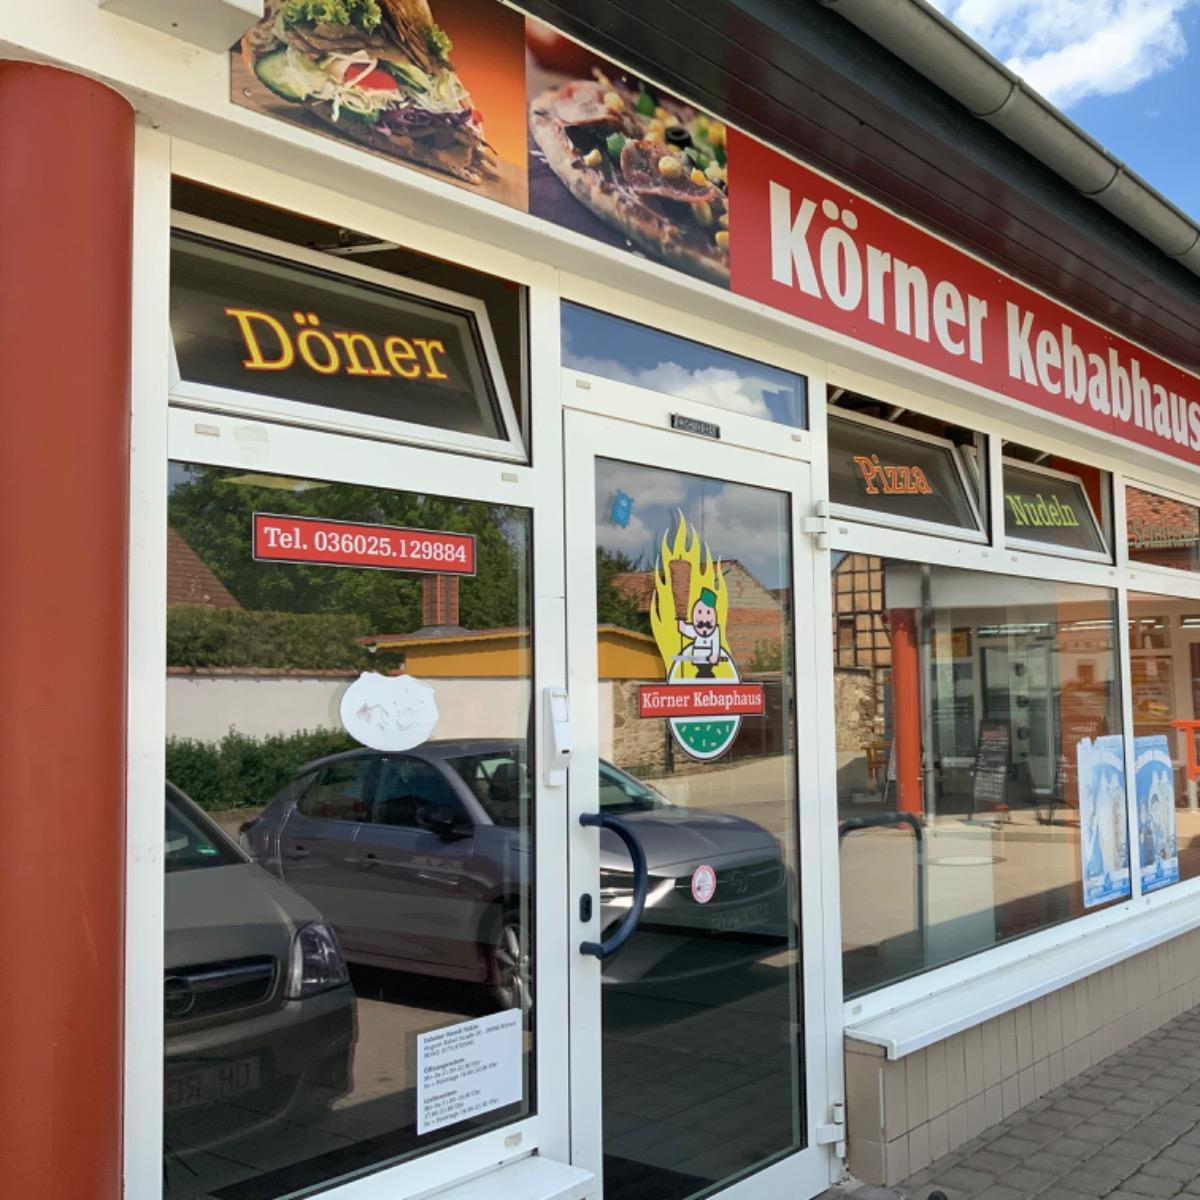 Restaurant "Kebaphaus" in Körner